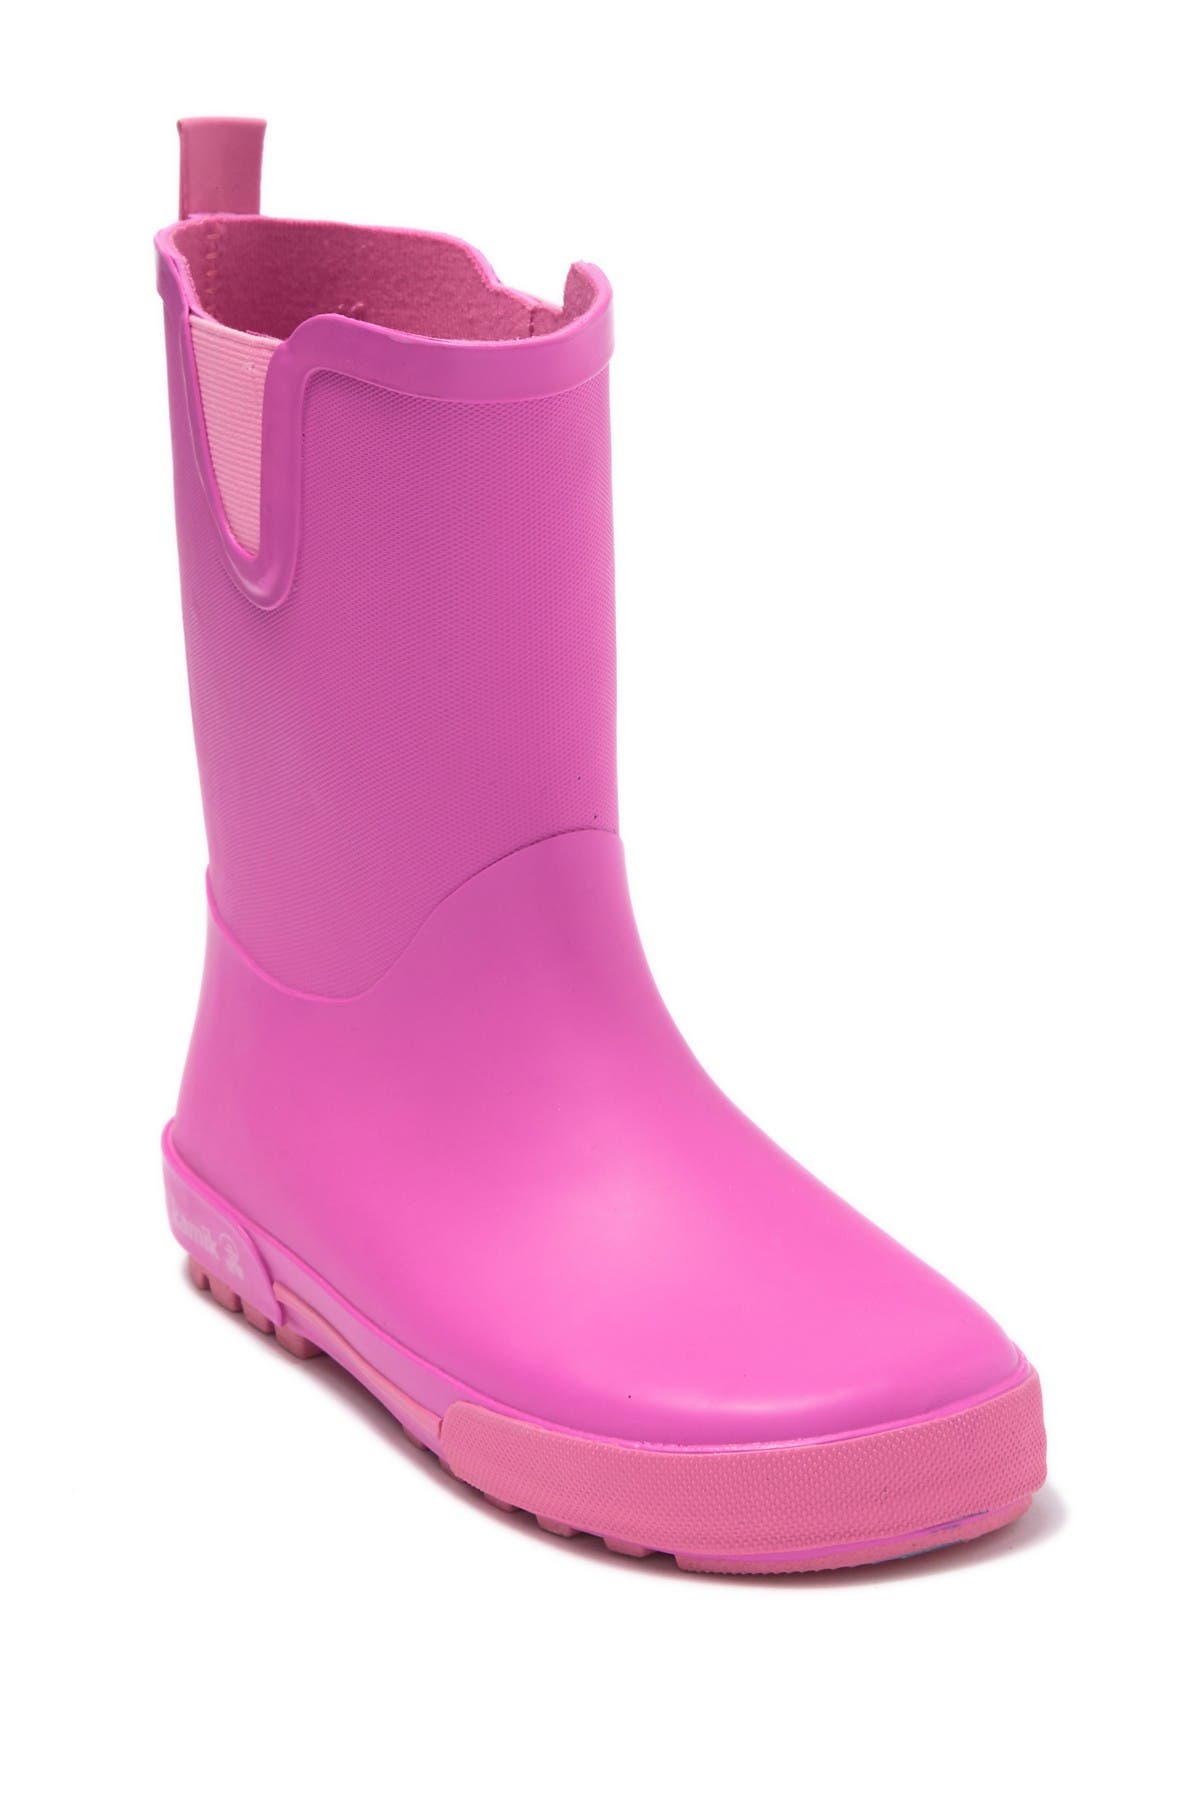 Kamik | Rainplay Waterproof Rain Boot 